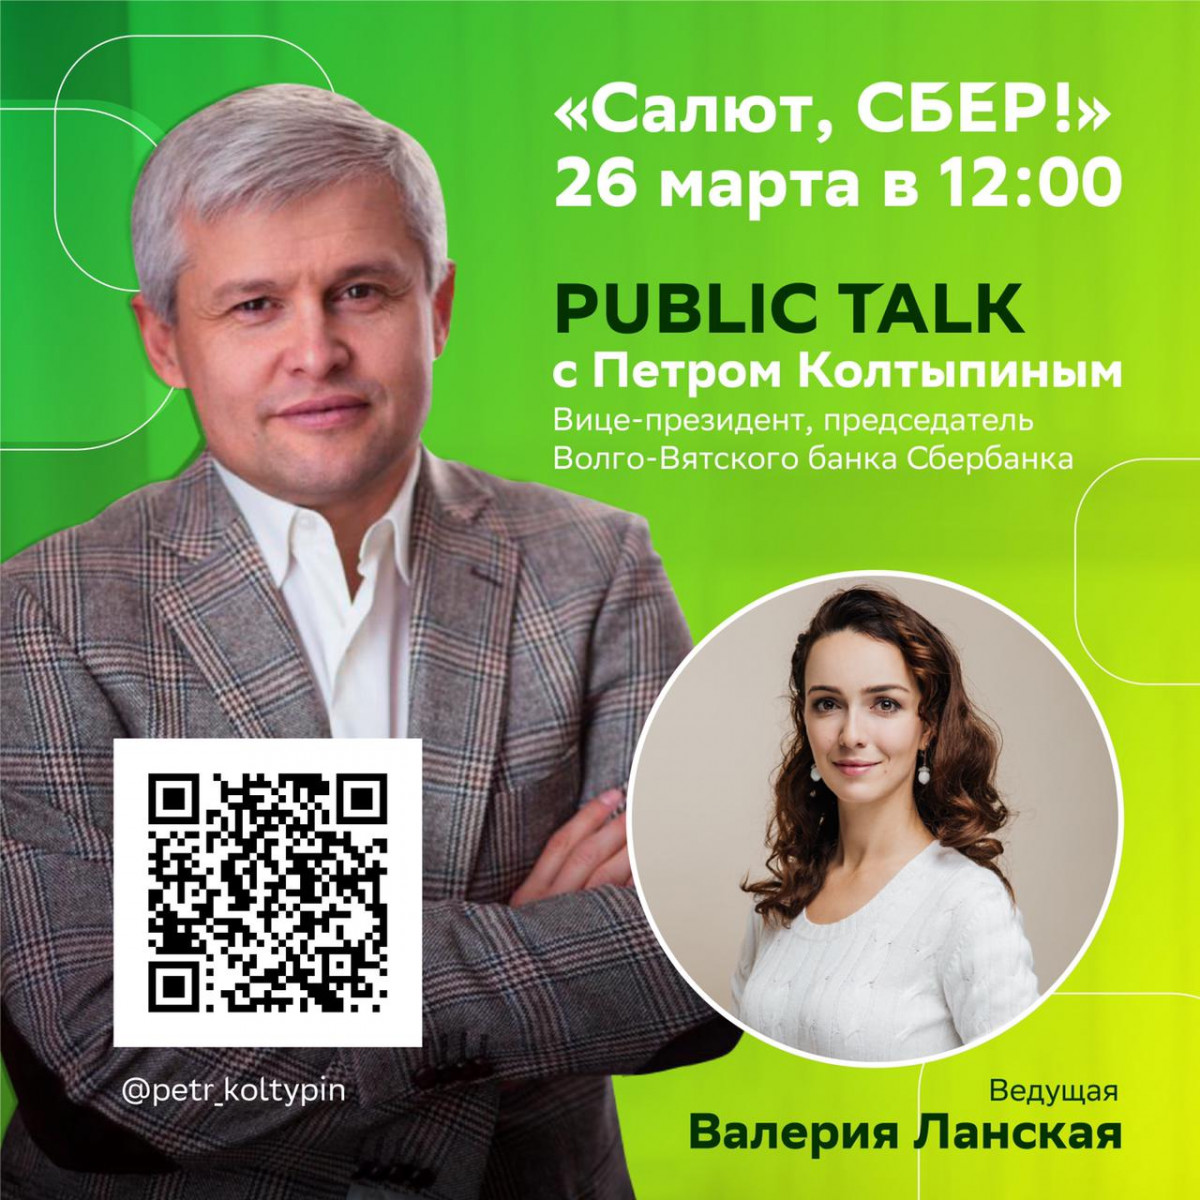 Public Talk с Петром Колтыпиным состоится 26 марта